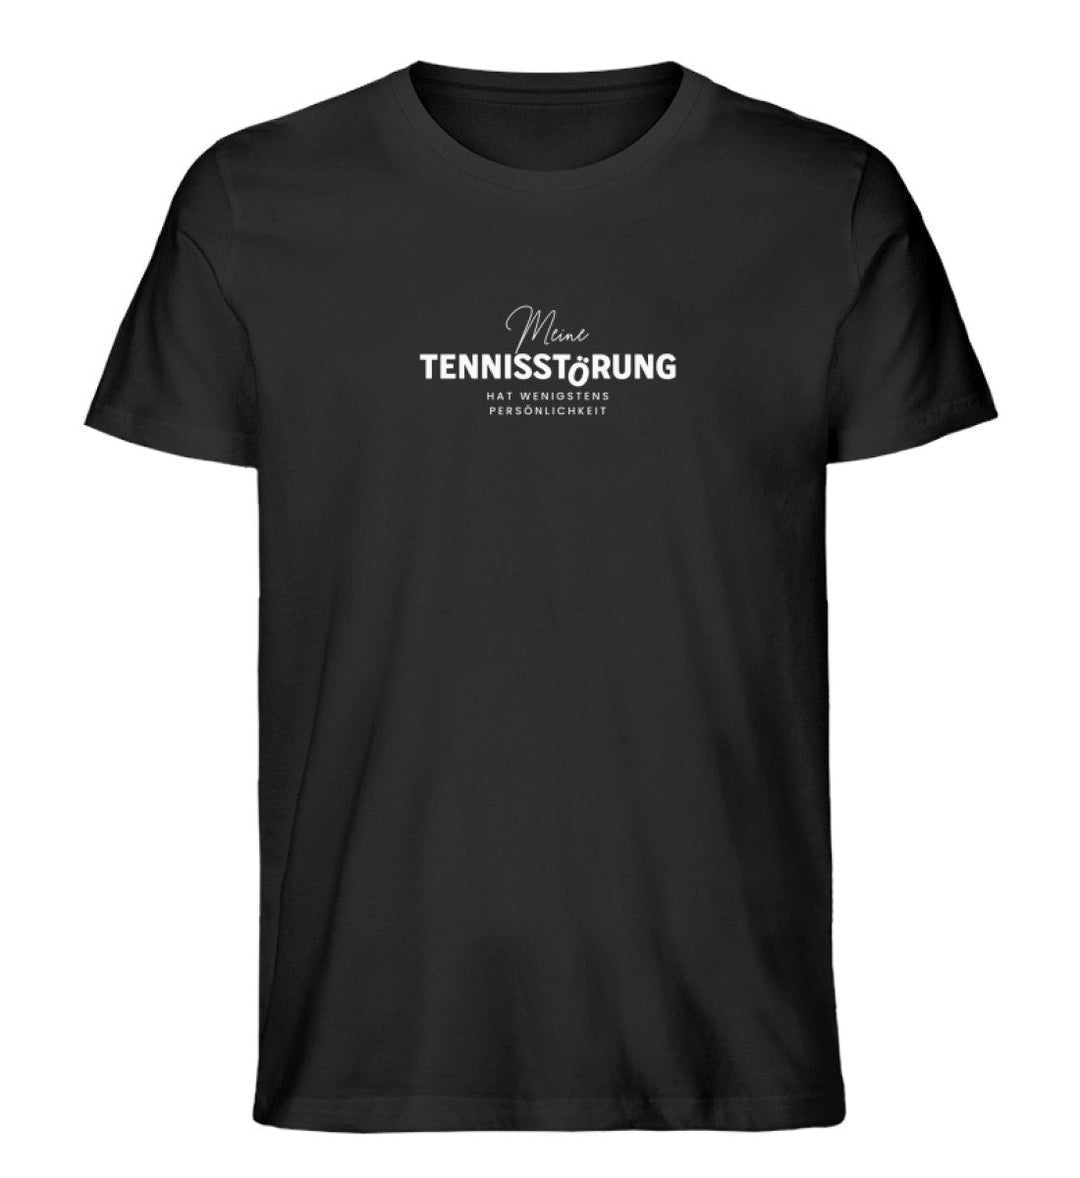 Tennisstörung | Premium Herren T-Shirt - Matchpoint24 - Kleidung für Tennisfans